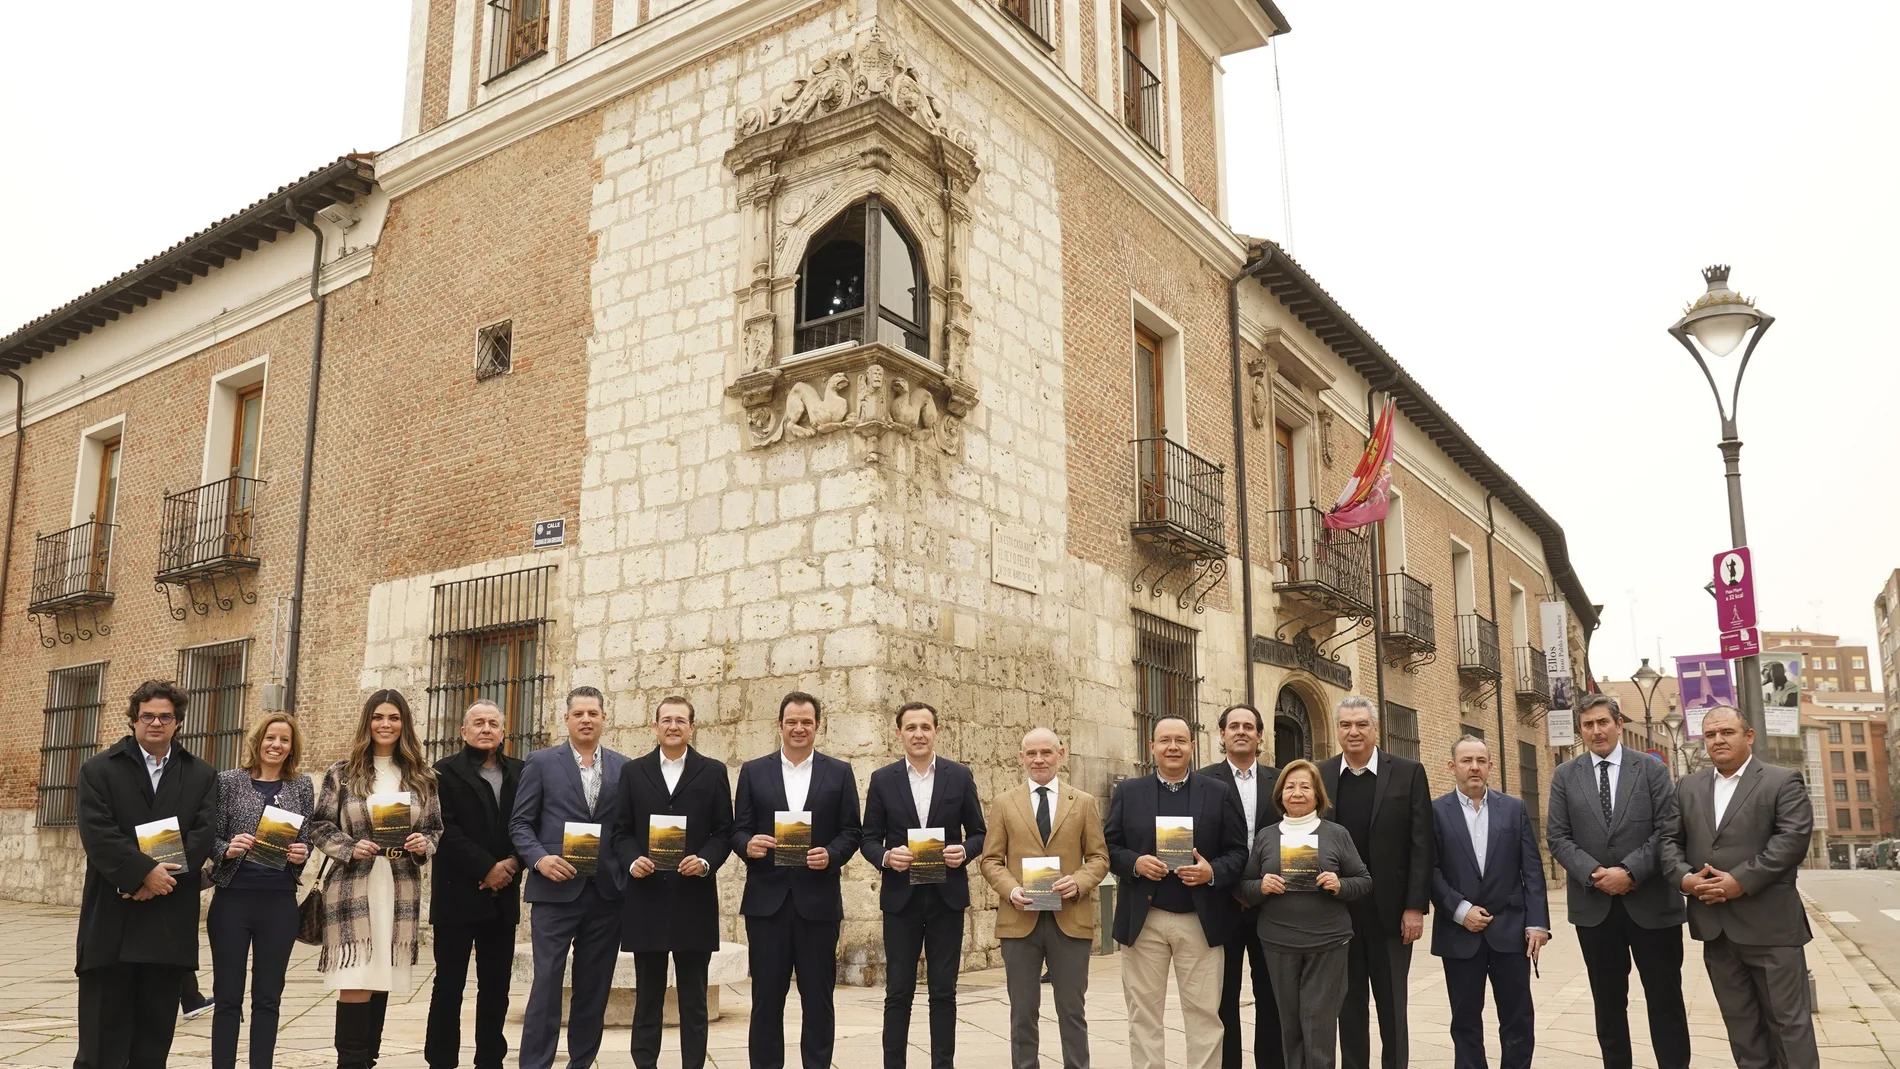 Presentación de la acción de promoción enoturística de la provincia de Valladolid con Aeroméxico y nueve agencias de viaje mexicanas en el Palacio de Pimentel de Valladolid, sede de la Diputación